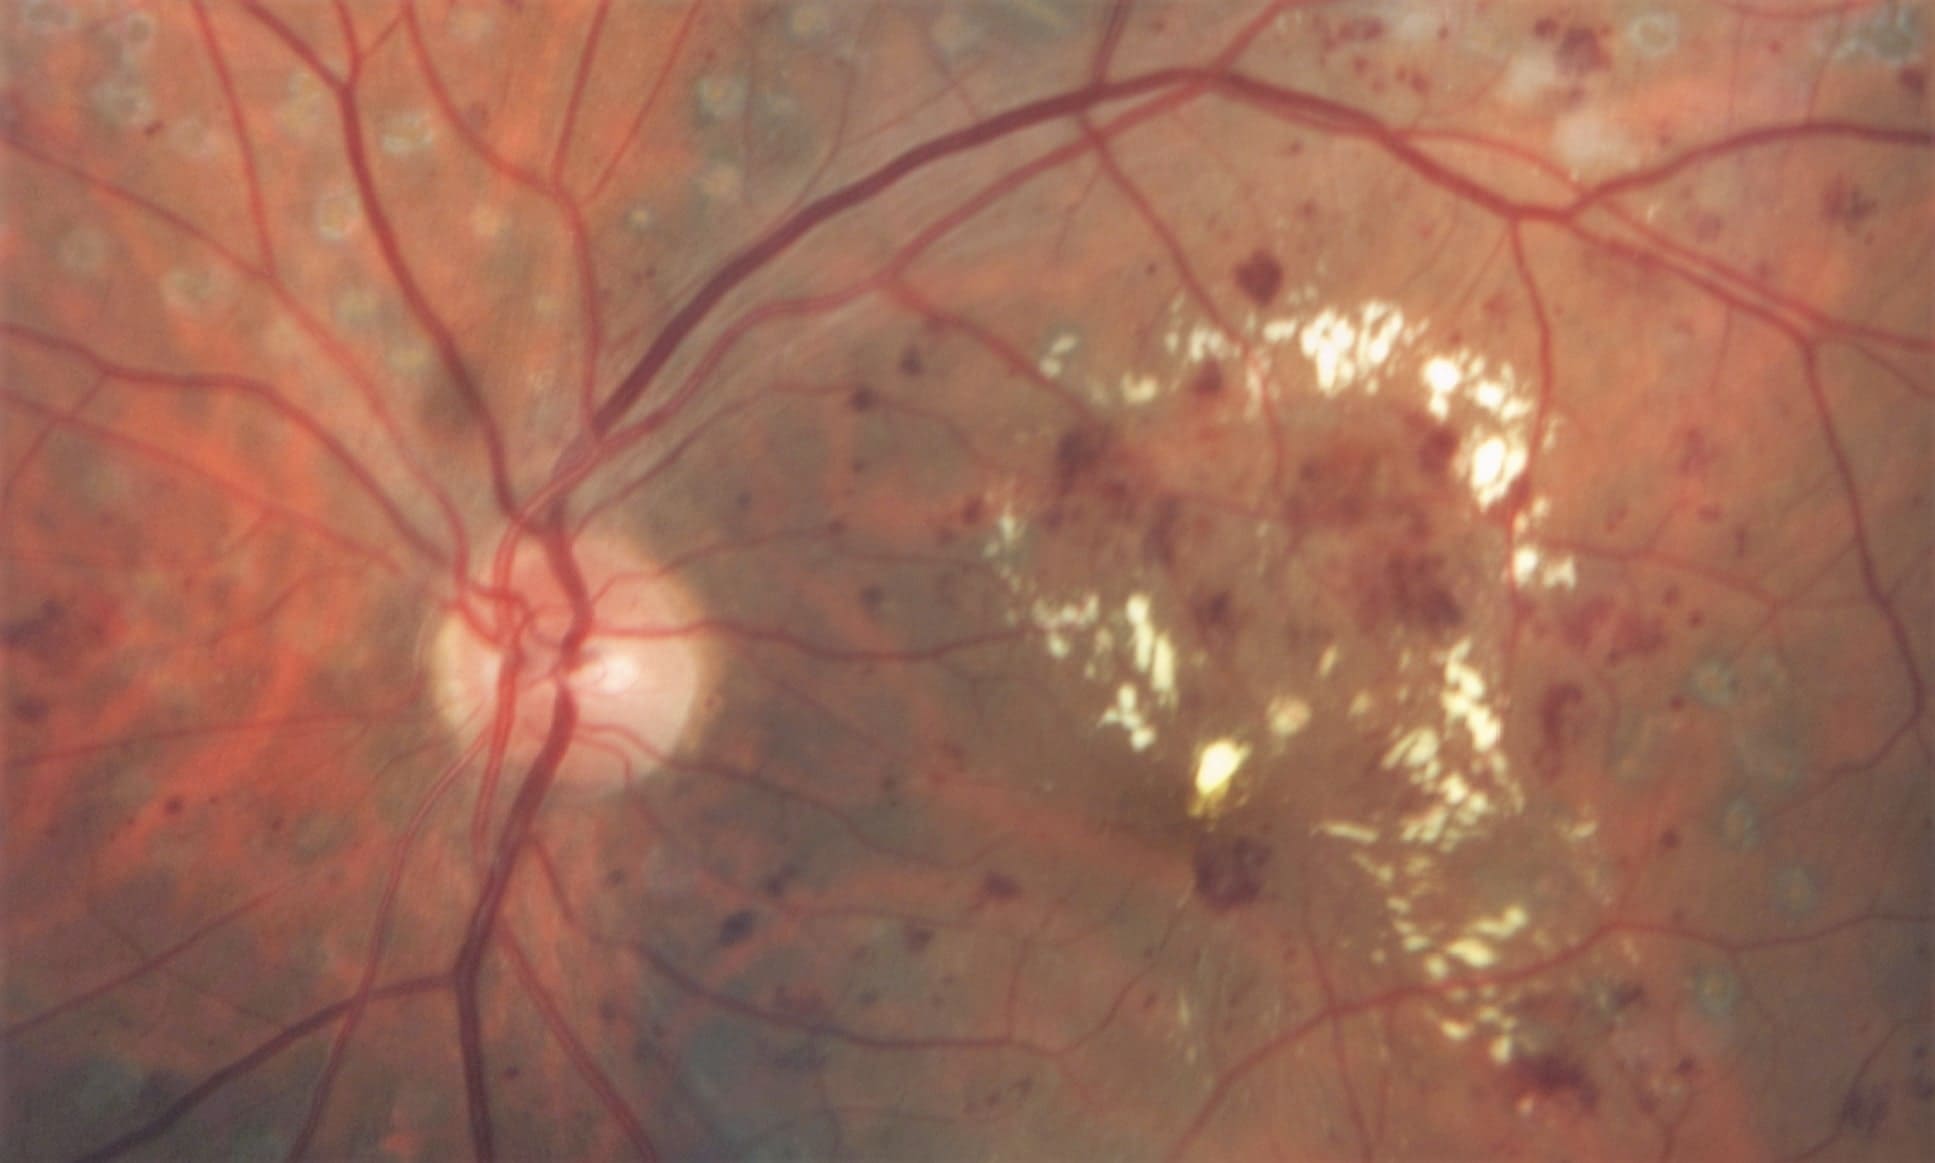 Retinopatía diabética fondo de ojo